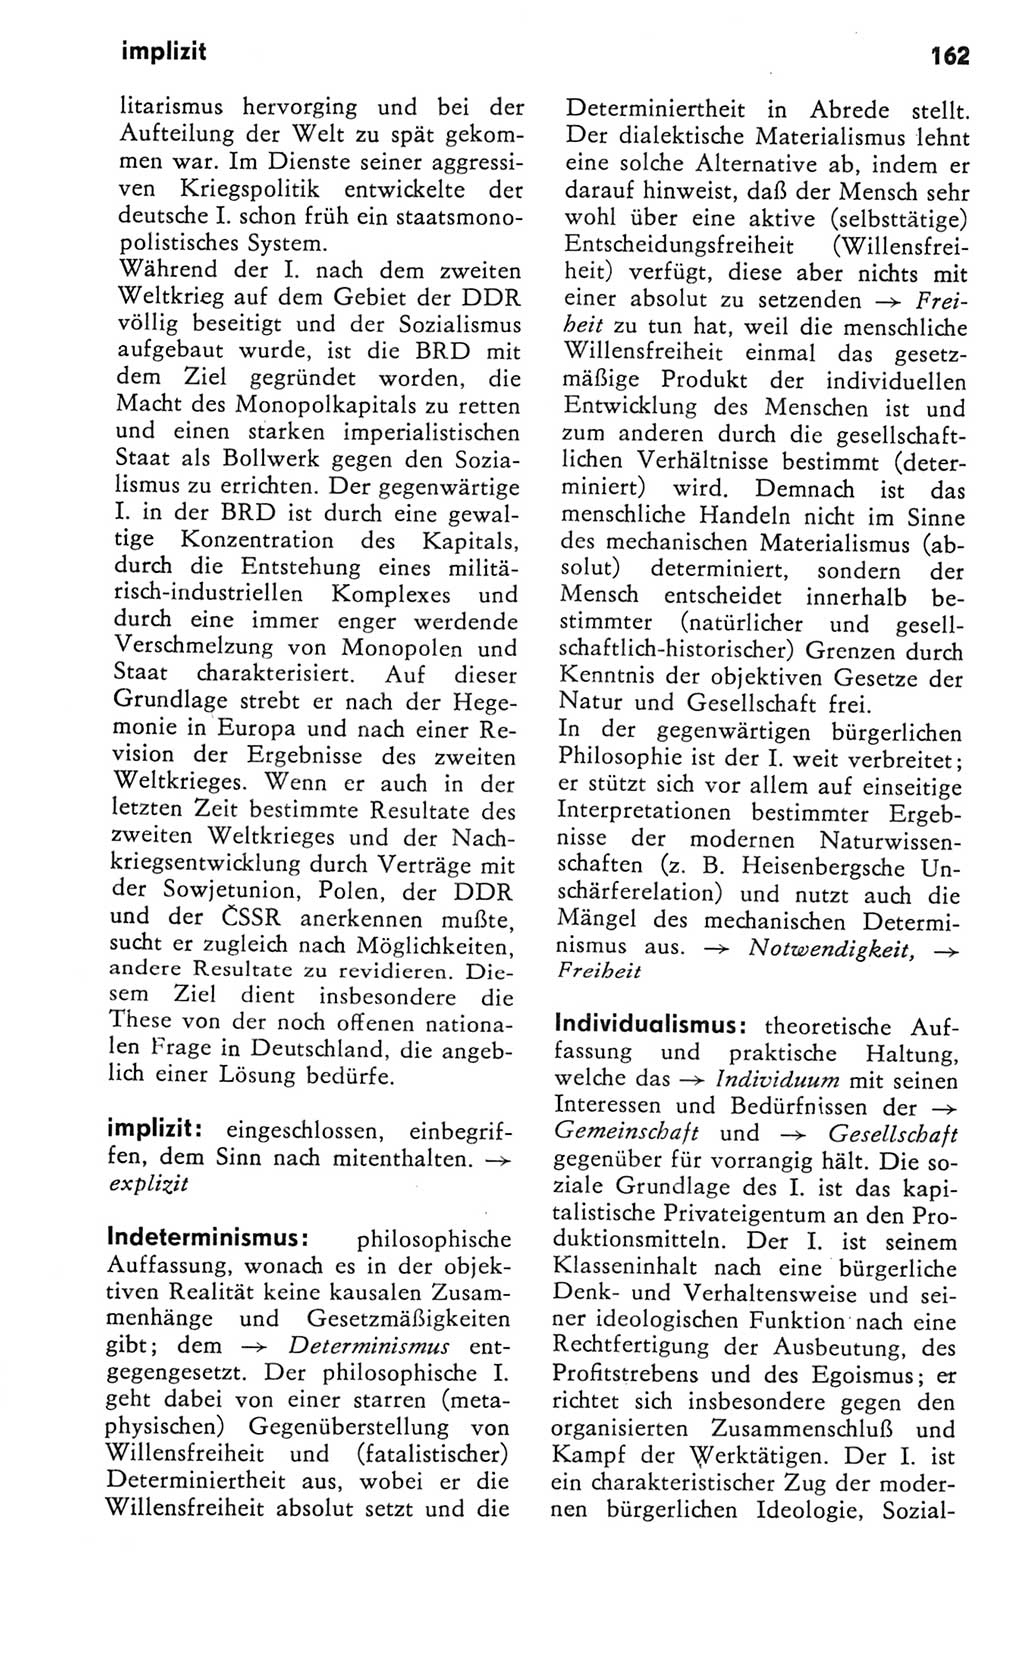 Kleines Wörterbuch der marxistisch-leninistischen Philosophie [Deutsche Demokratische Republik (DDR)] 1981, Seite 162 (Kl. Wb. ML Phil. DDR 1981, S. 162)